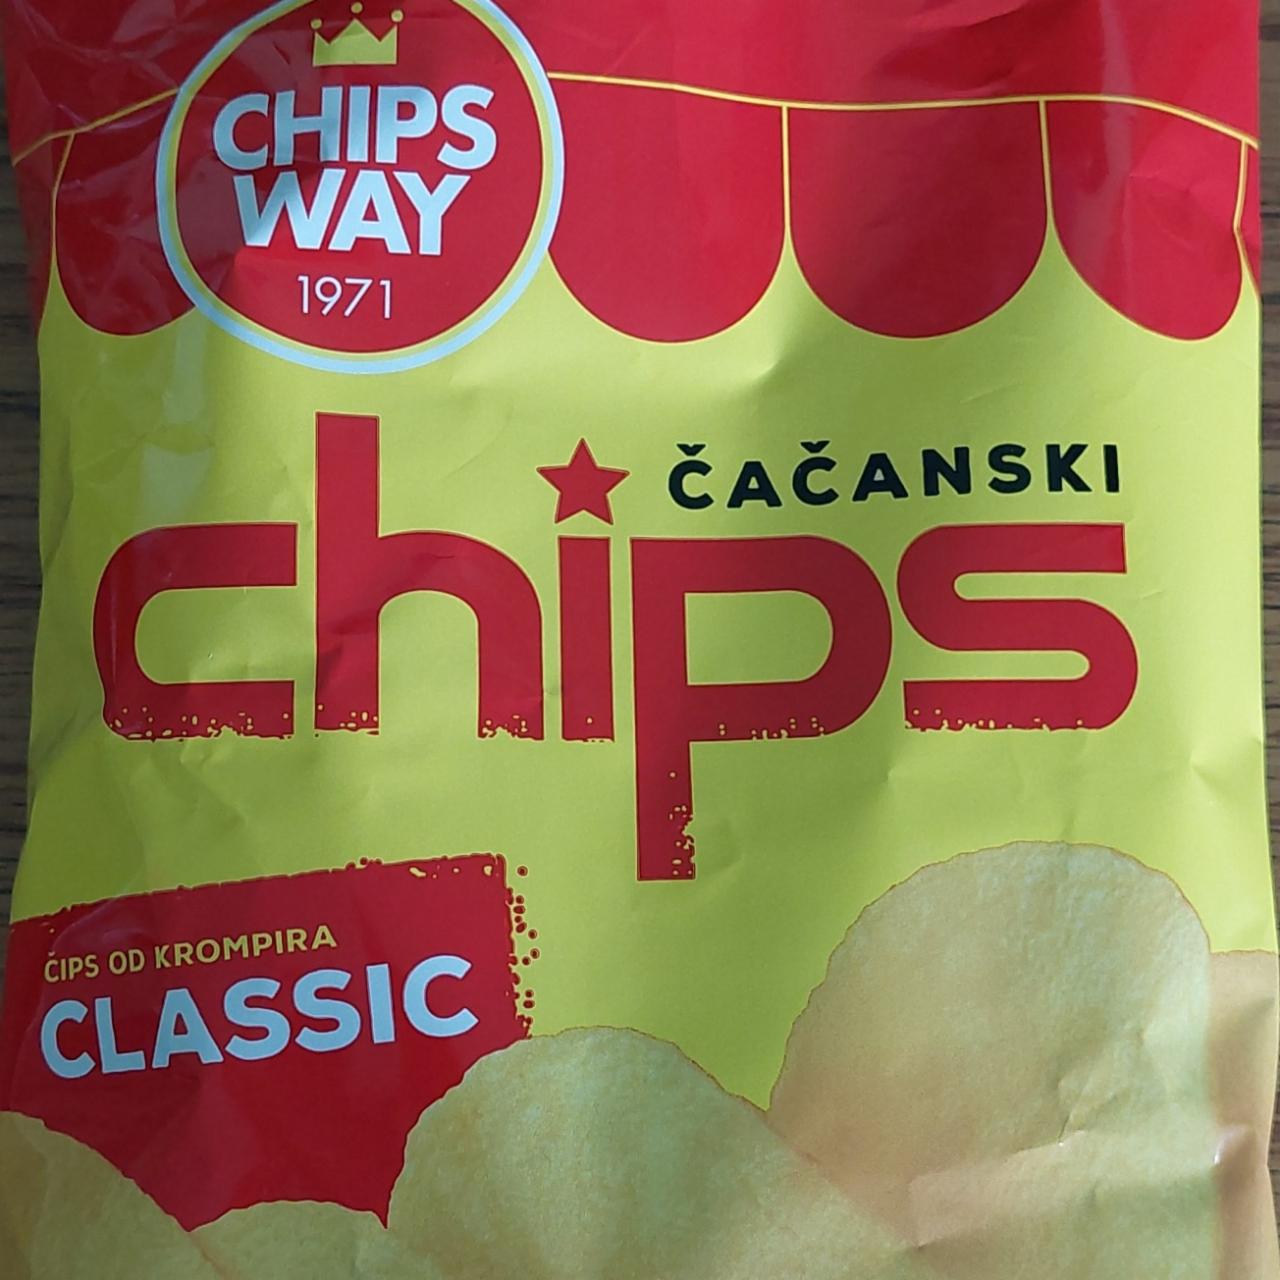 Képek - Čačanski chips classic Chips way